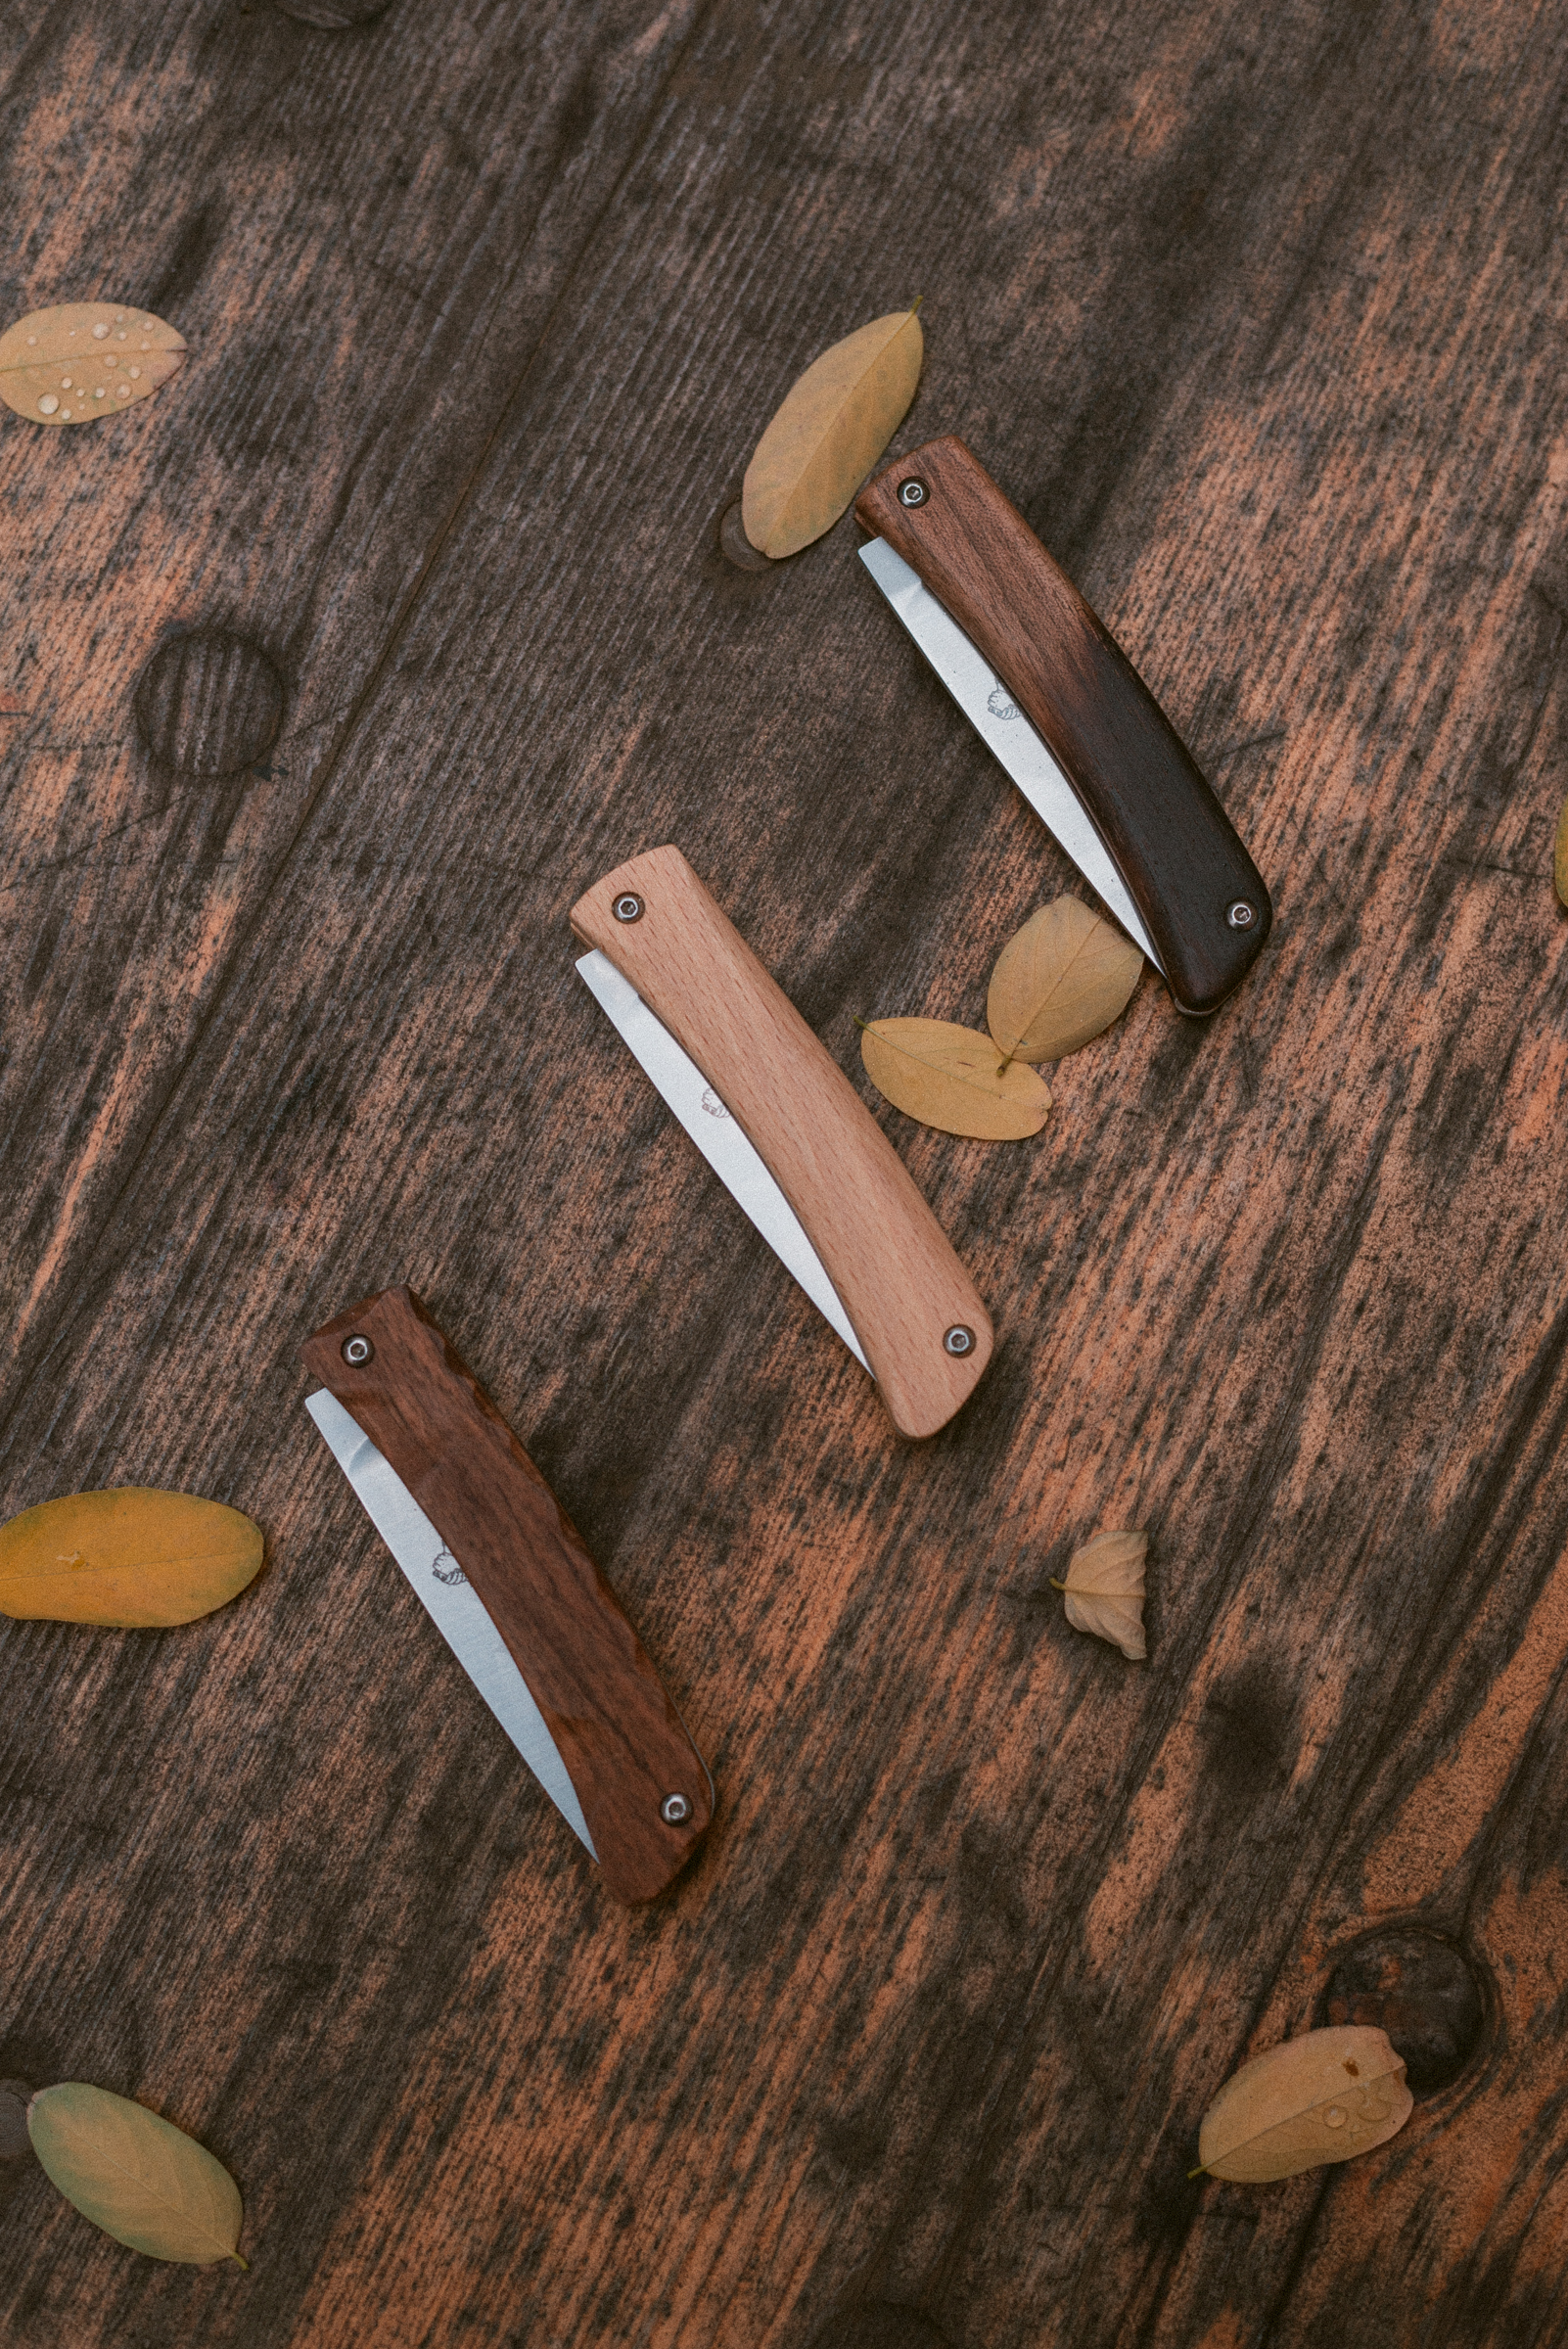 trois couteaux sur une table en bois